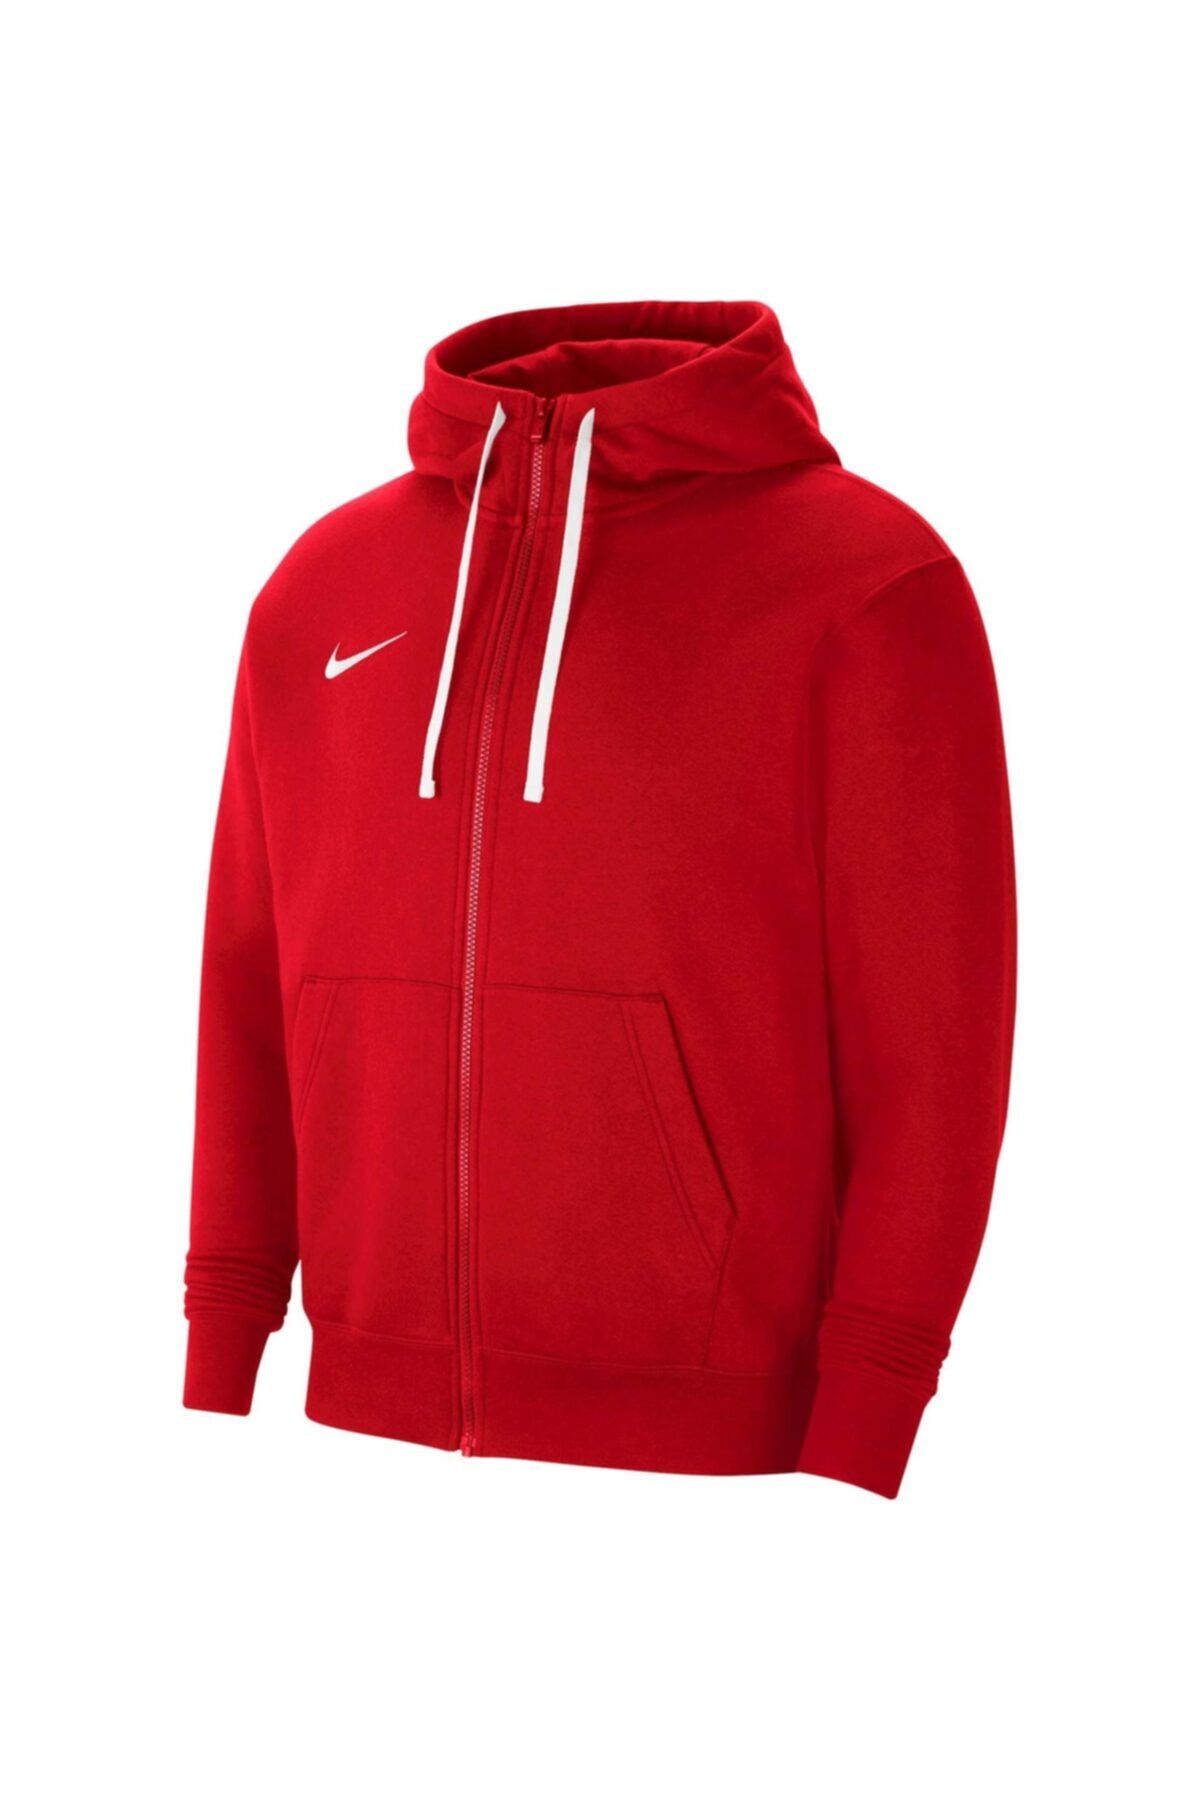 Nike Dry Park Cw6887-657 Kırmızı Erkek Sweatshirt